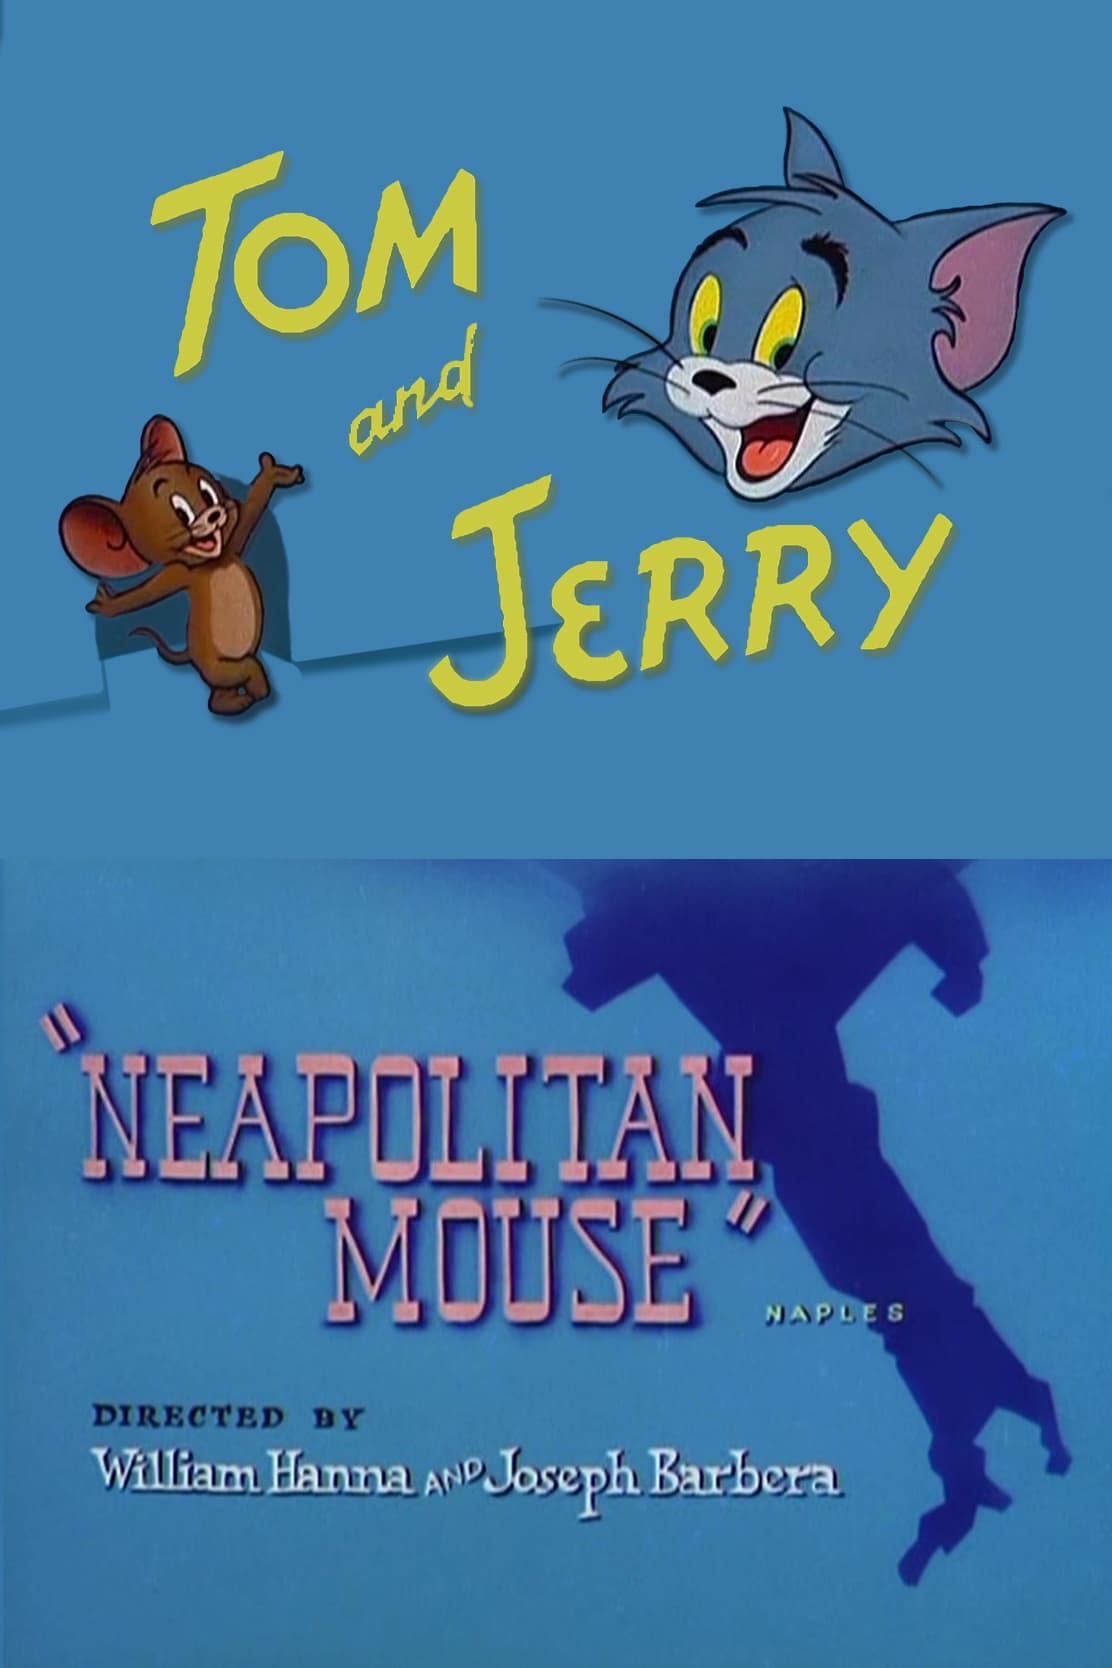 Neapolitan Mouse (1954)